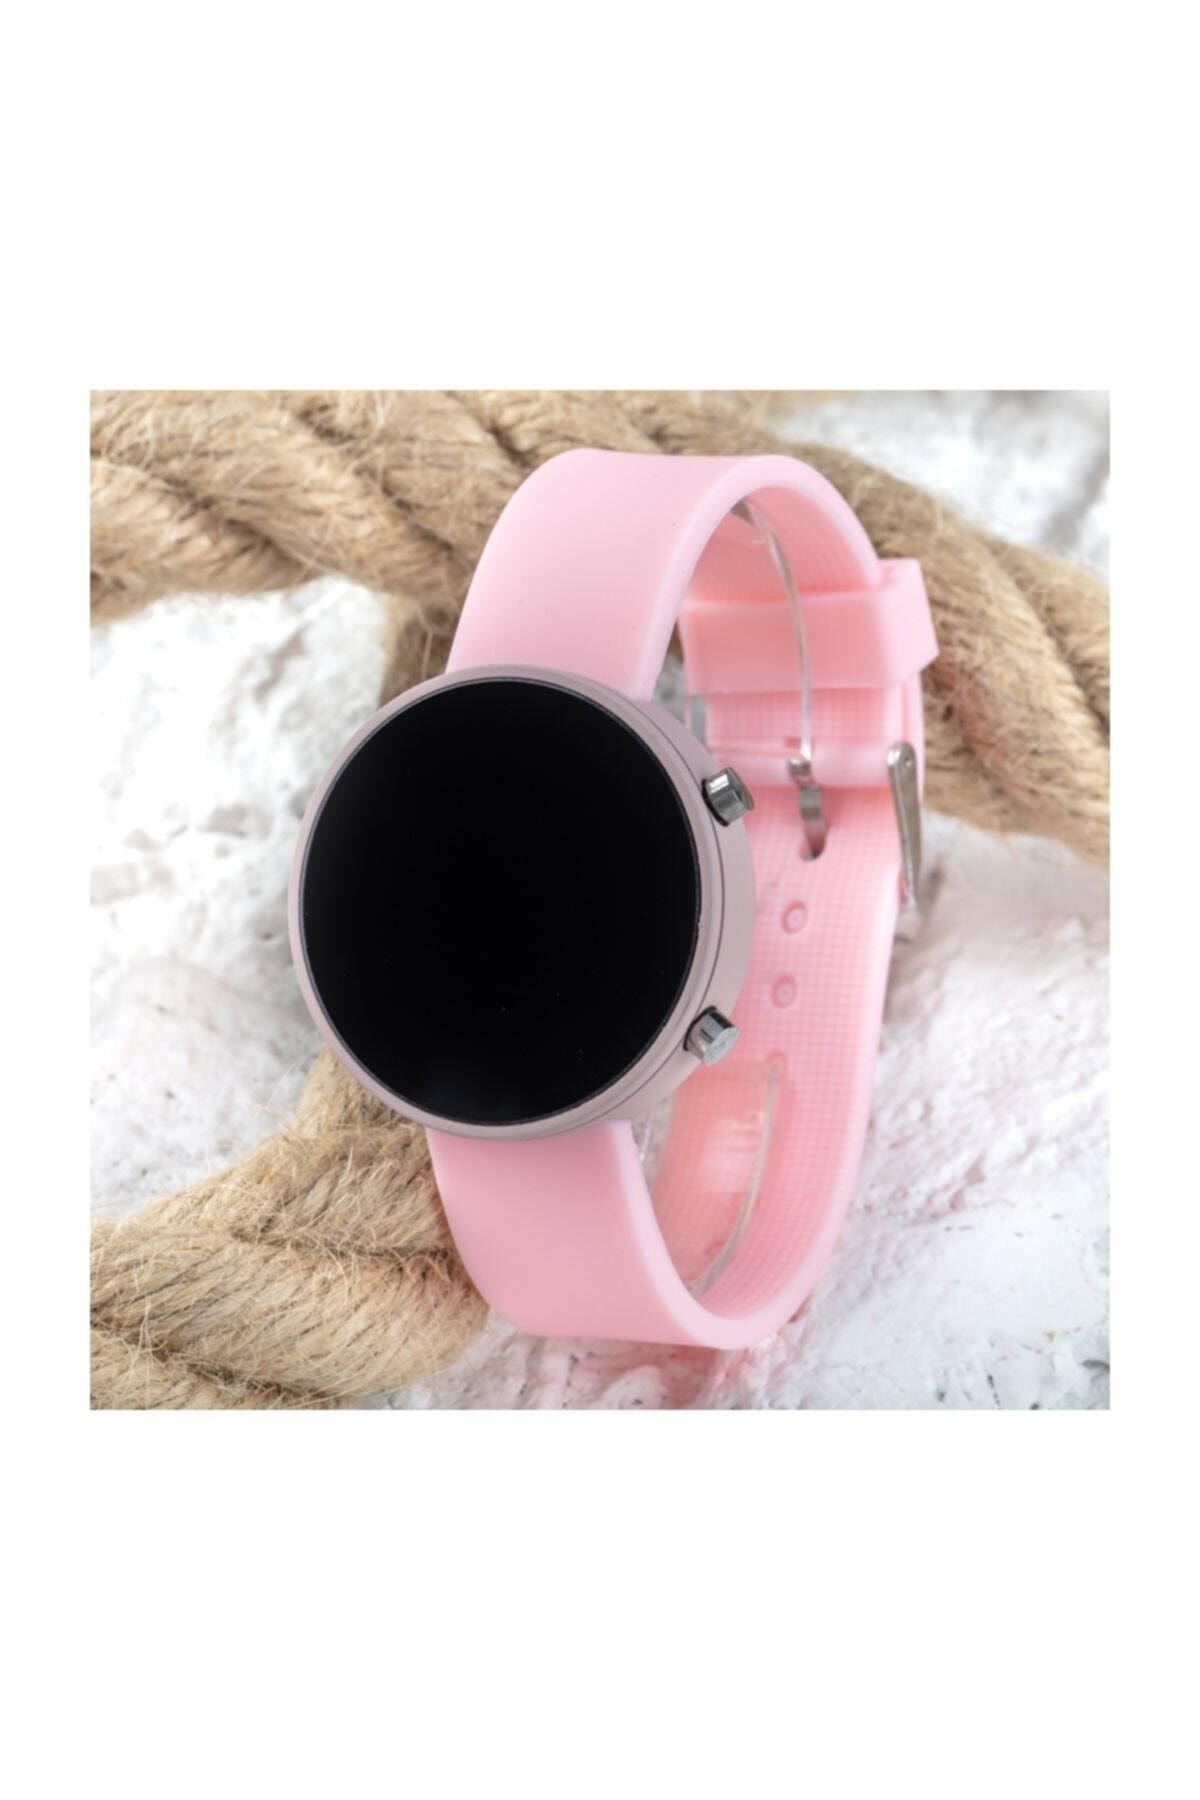 Spectrum Toz Pembe Renk Led Watch Dijital Yetişkin Kız Çocuk Silikon Kol Saati St-303560